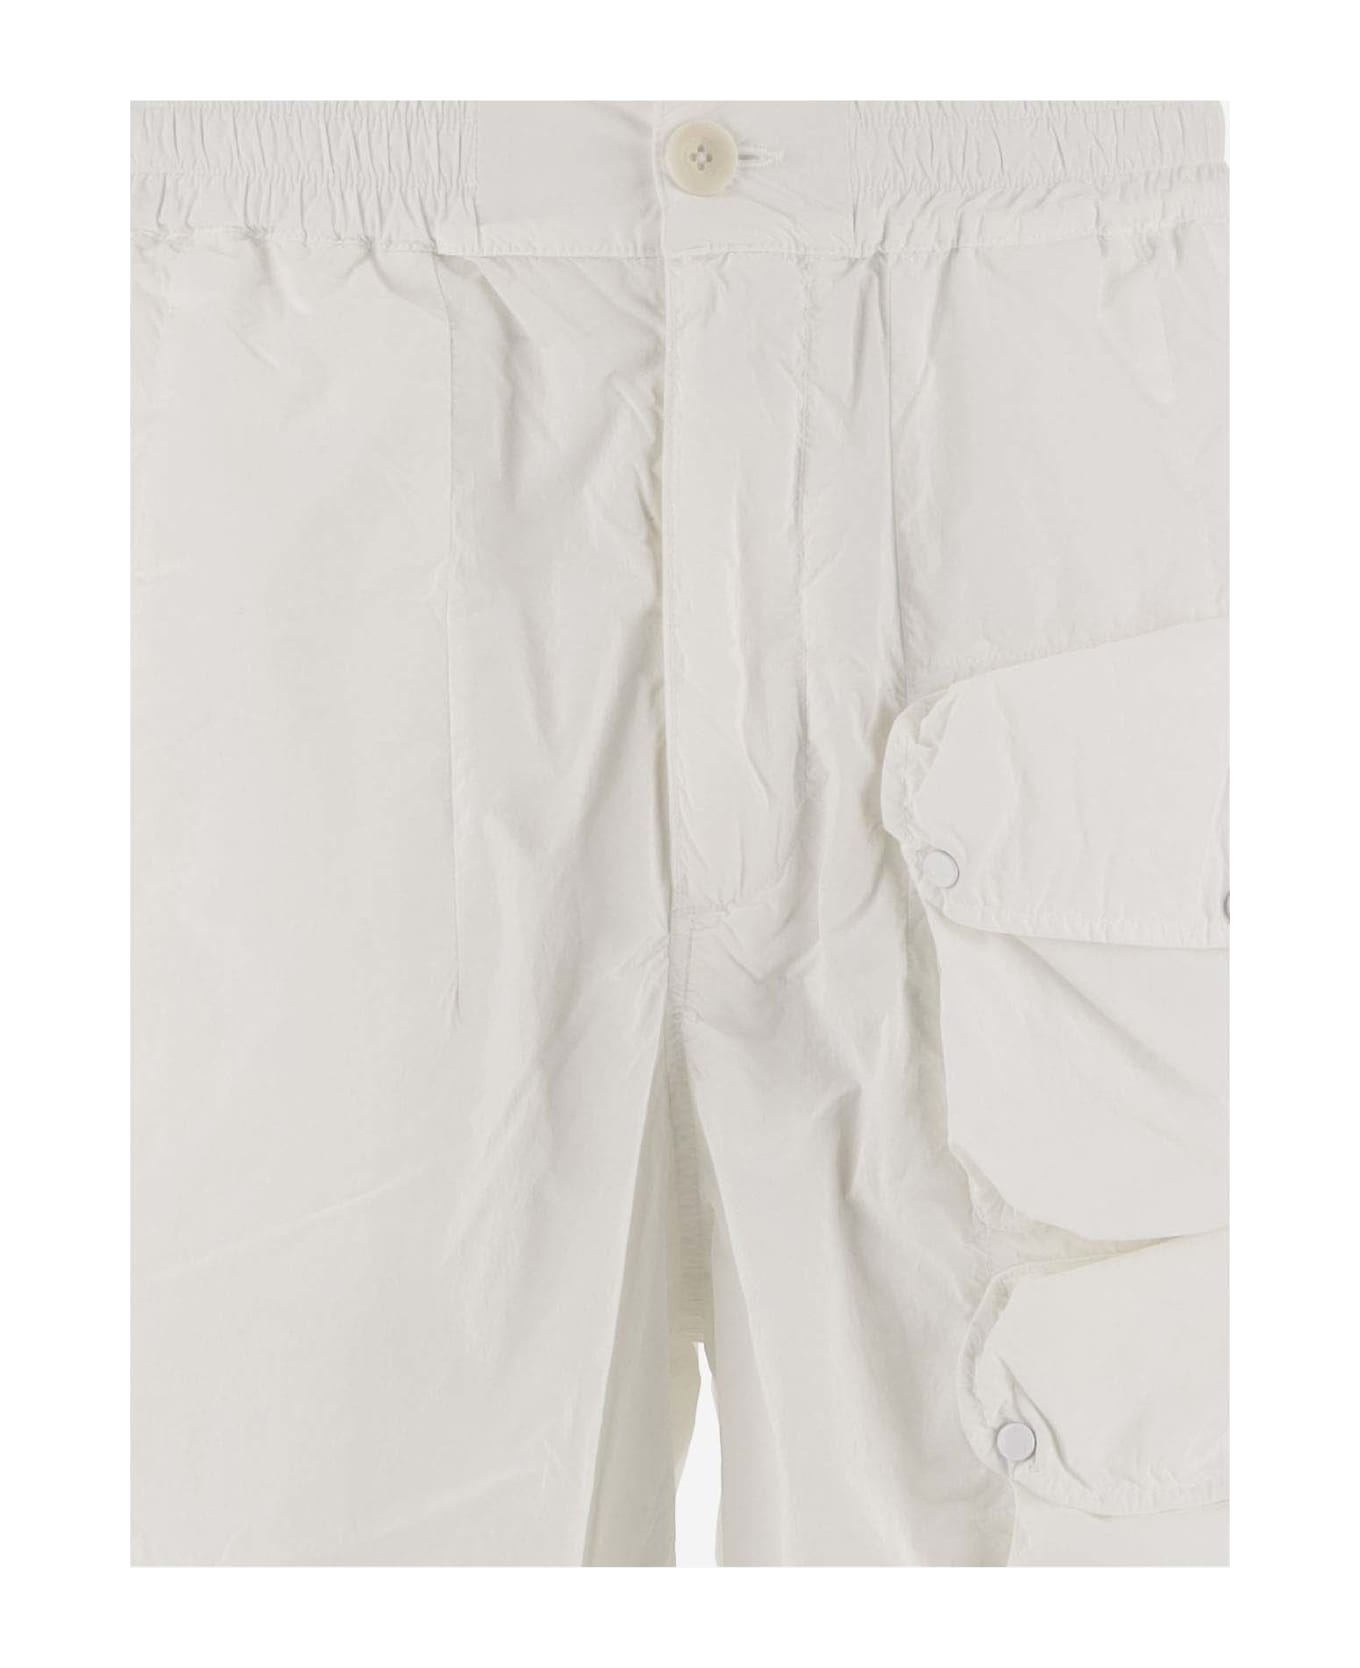 Ten C Nylon Cargo Shorts - White